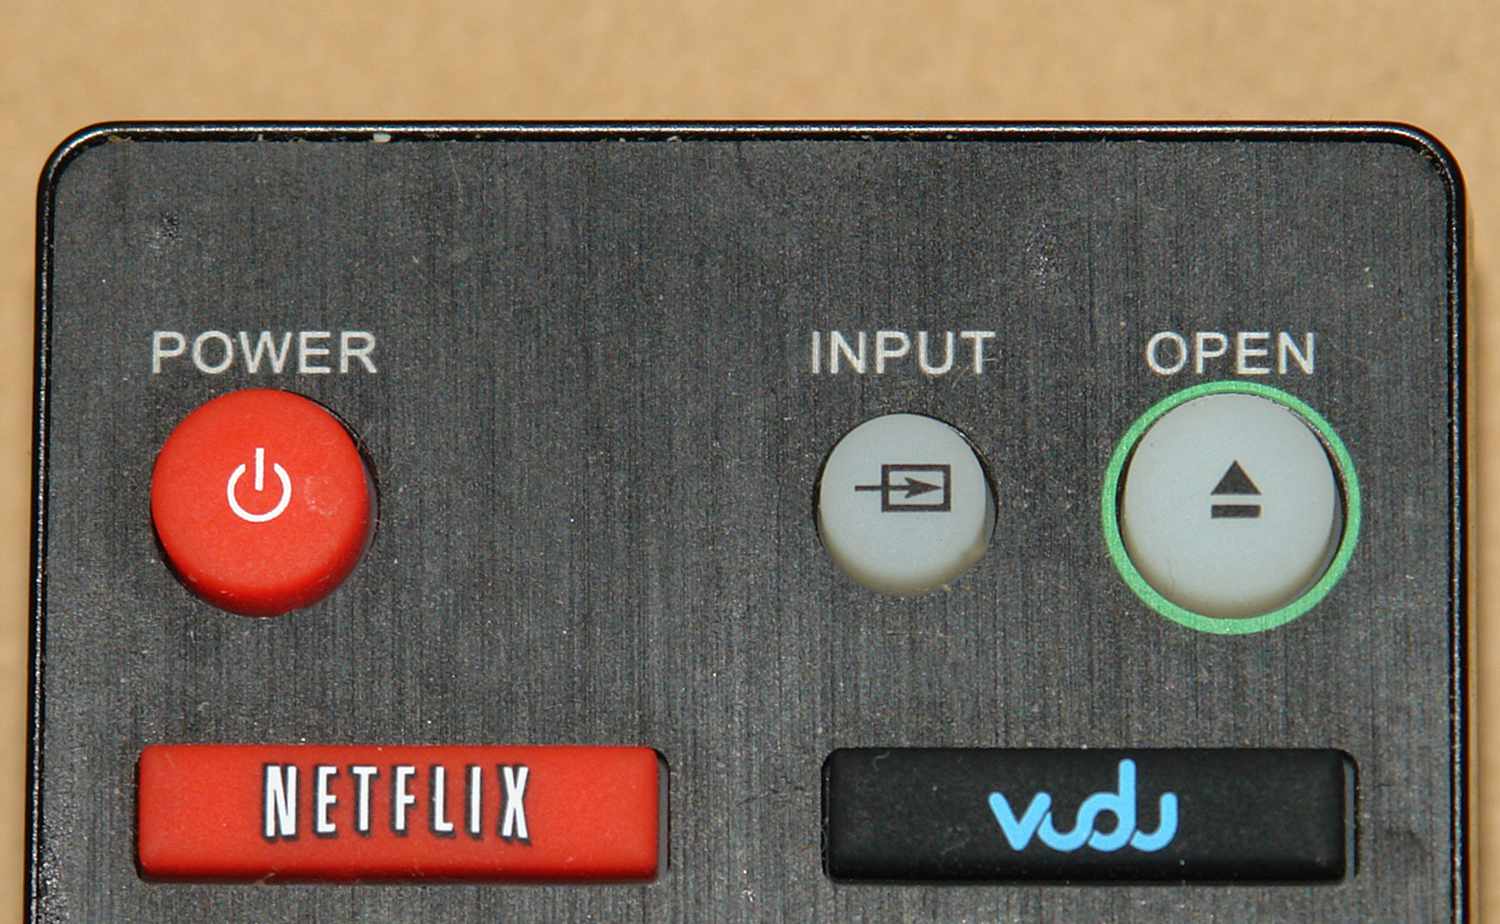 Netflix ja Vudu-painikkeet kaukosäätimessä